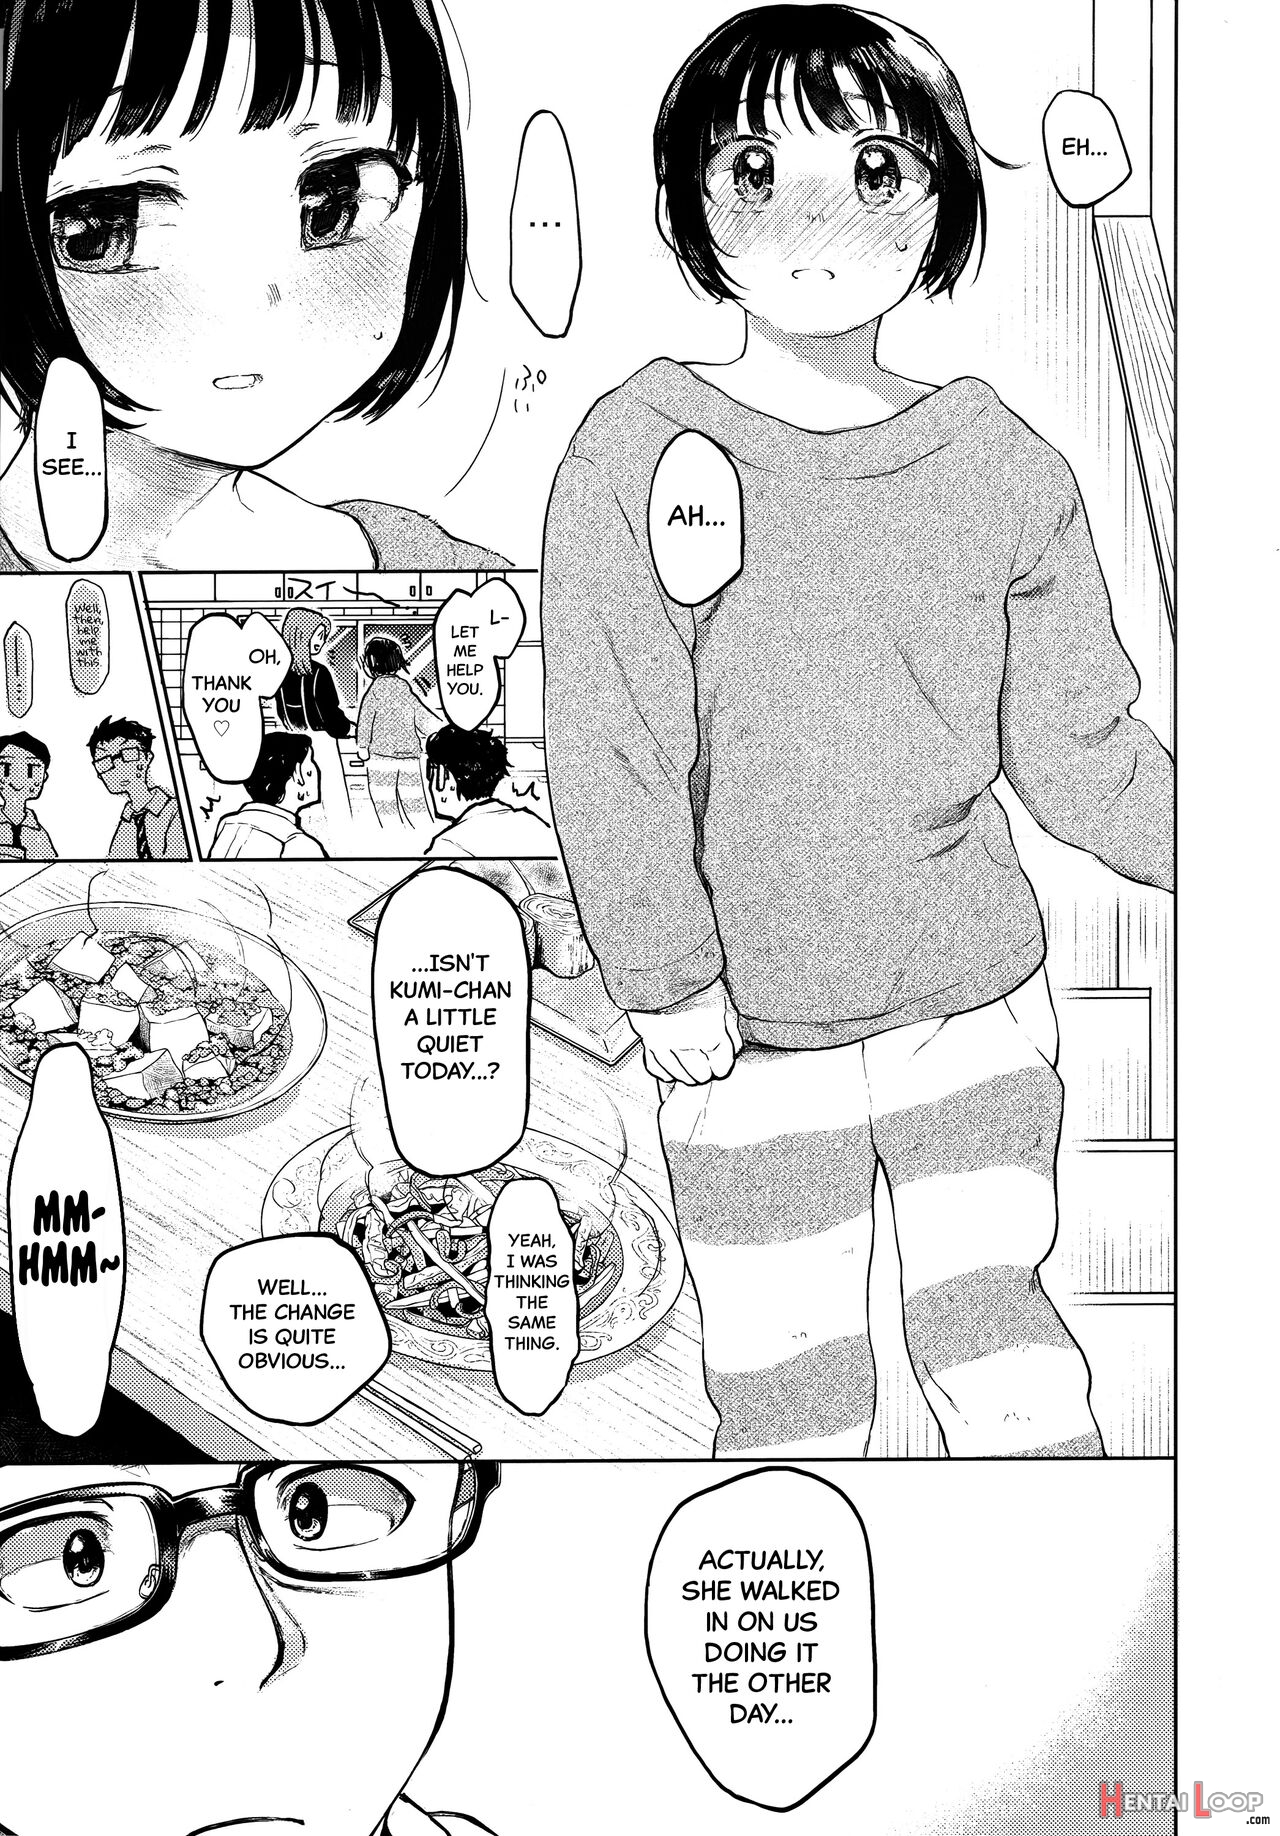 Kumi-chan page 4